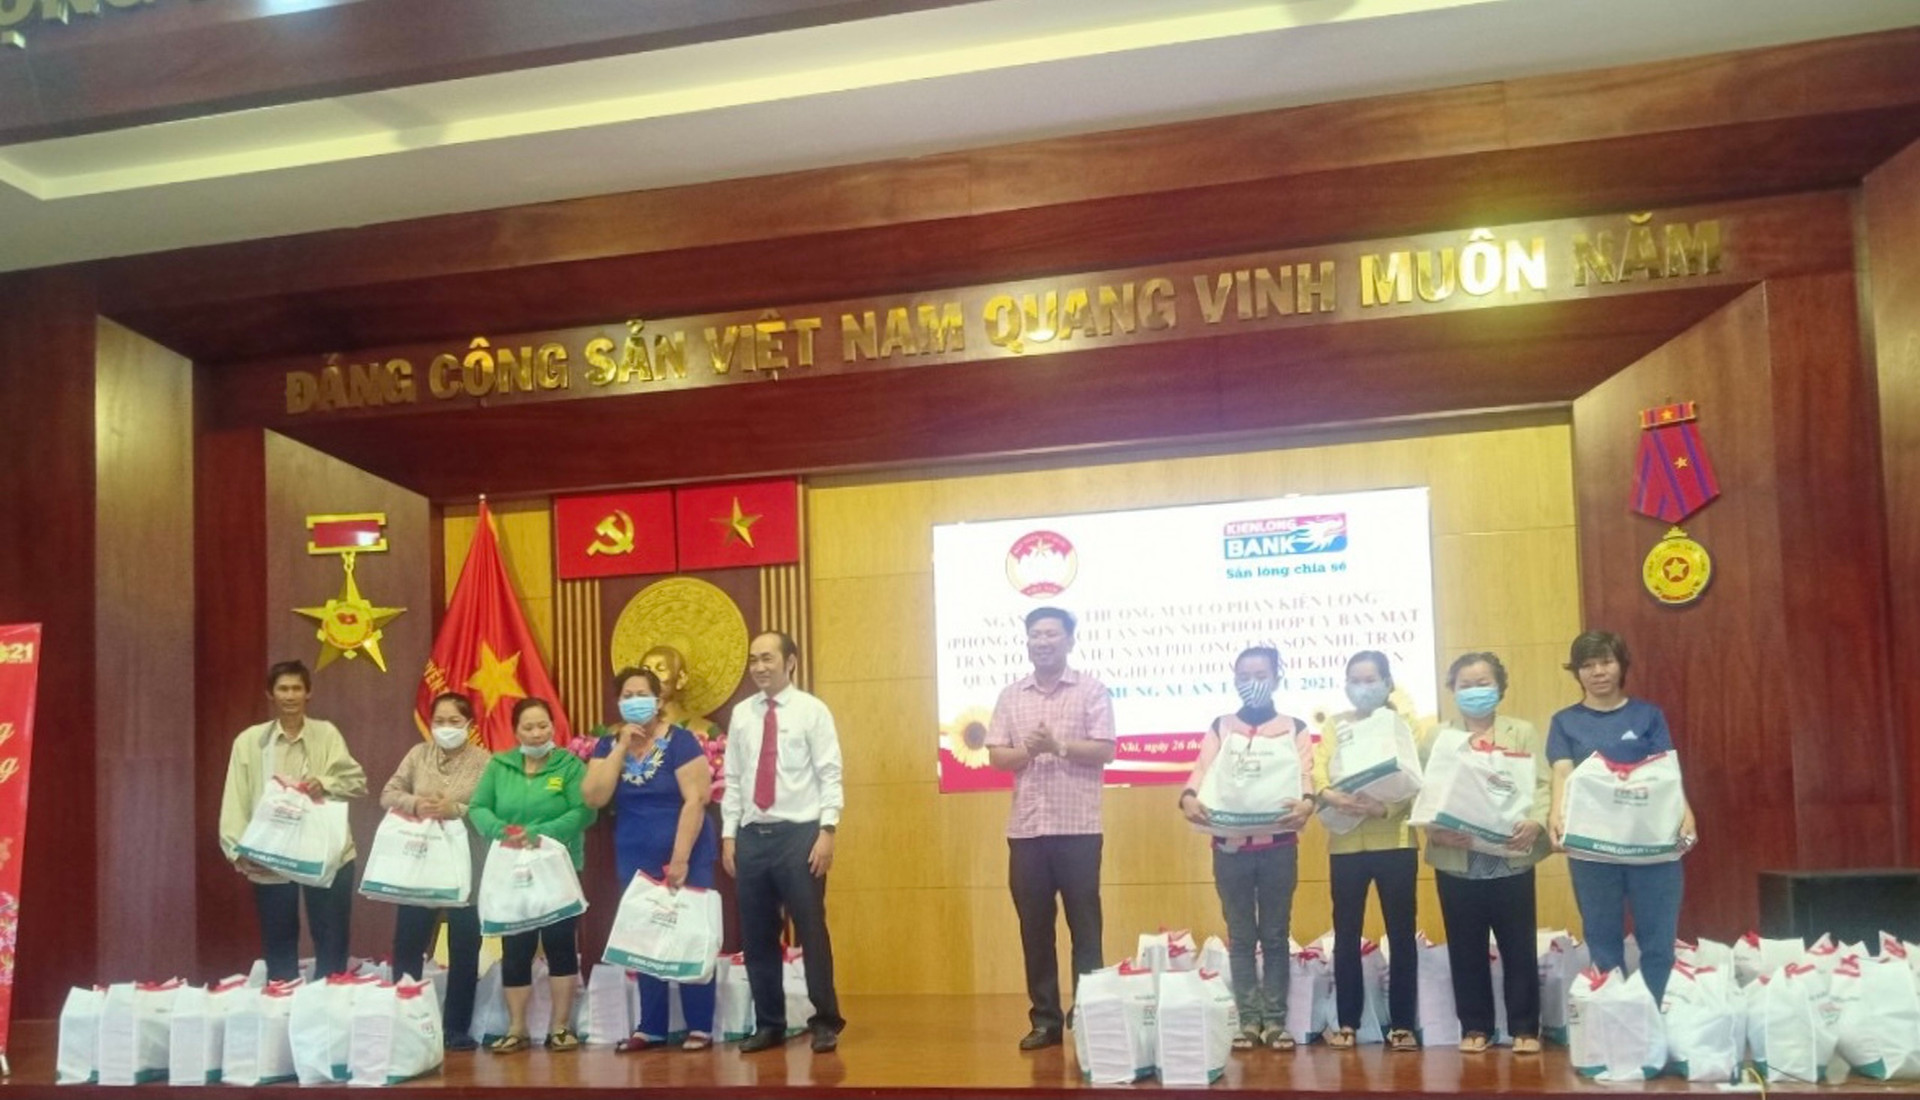 Ông Lê Anh Tuấn, Bí thư Đảng ủy phường Tân sơn Nhì trao quà cho các hộ nghèo